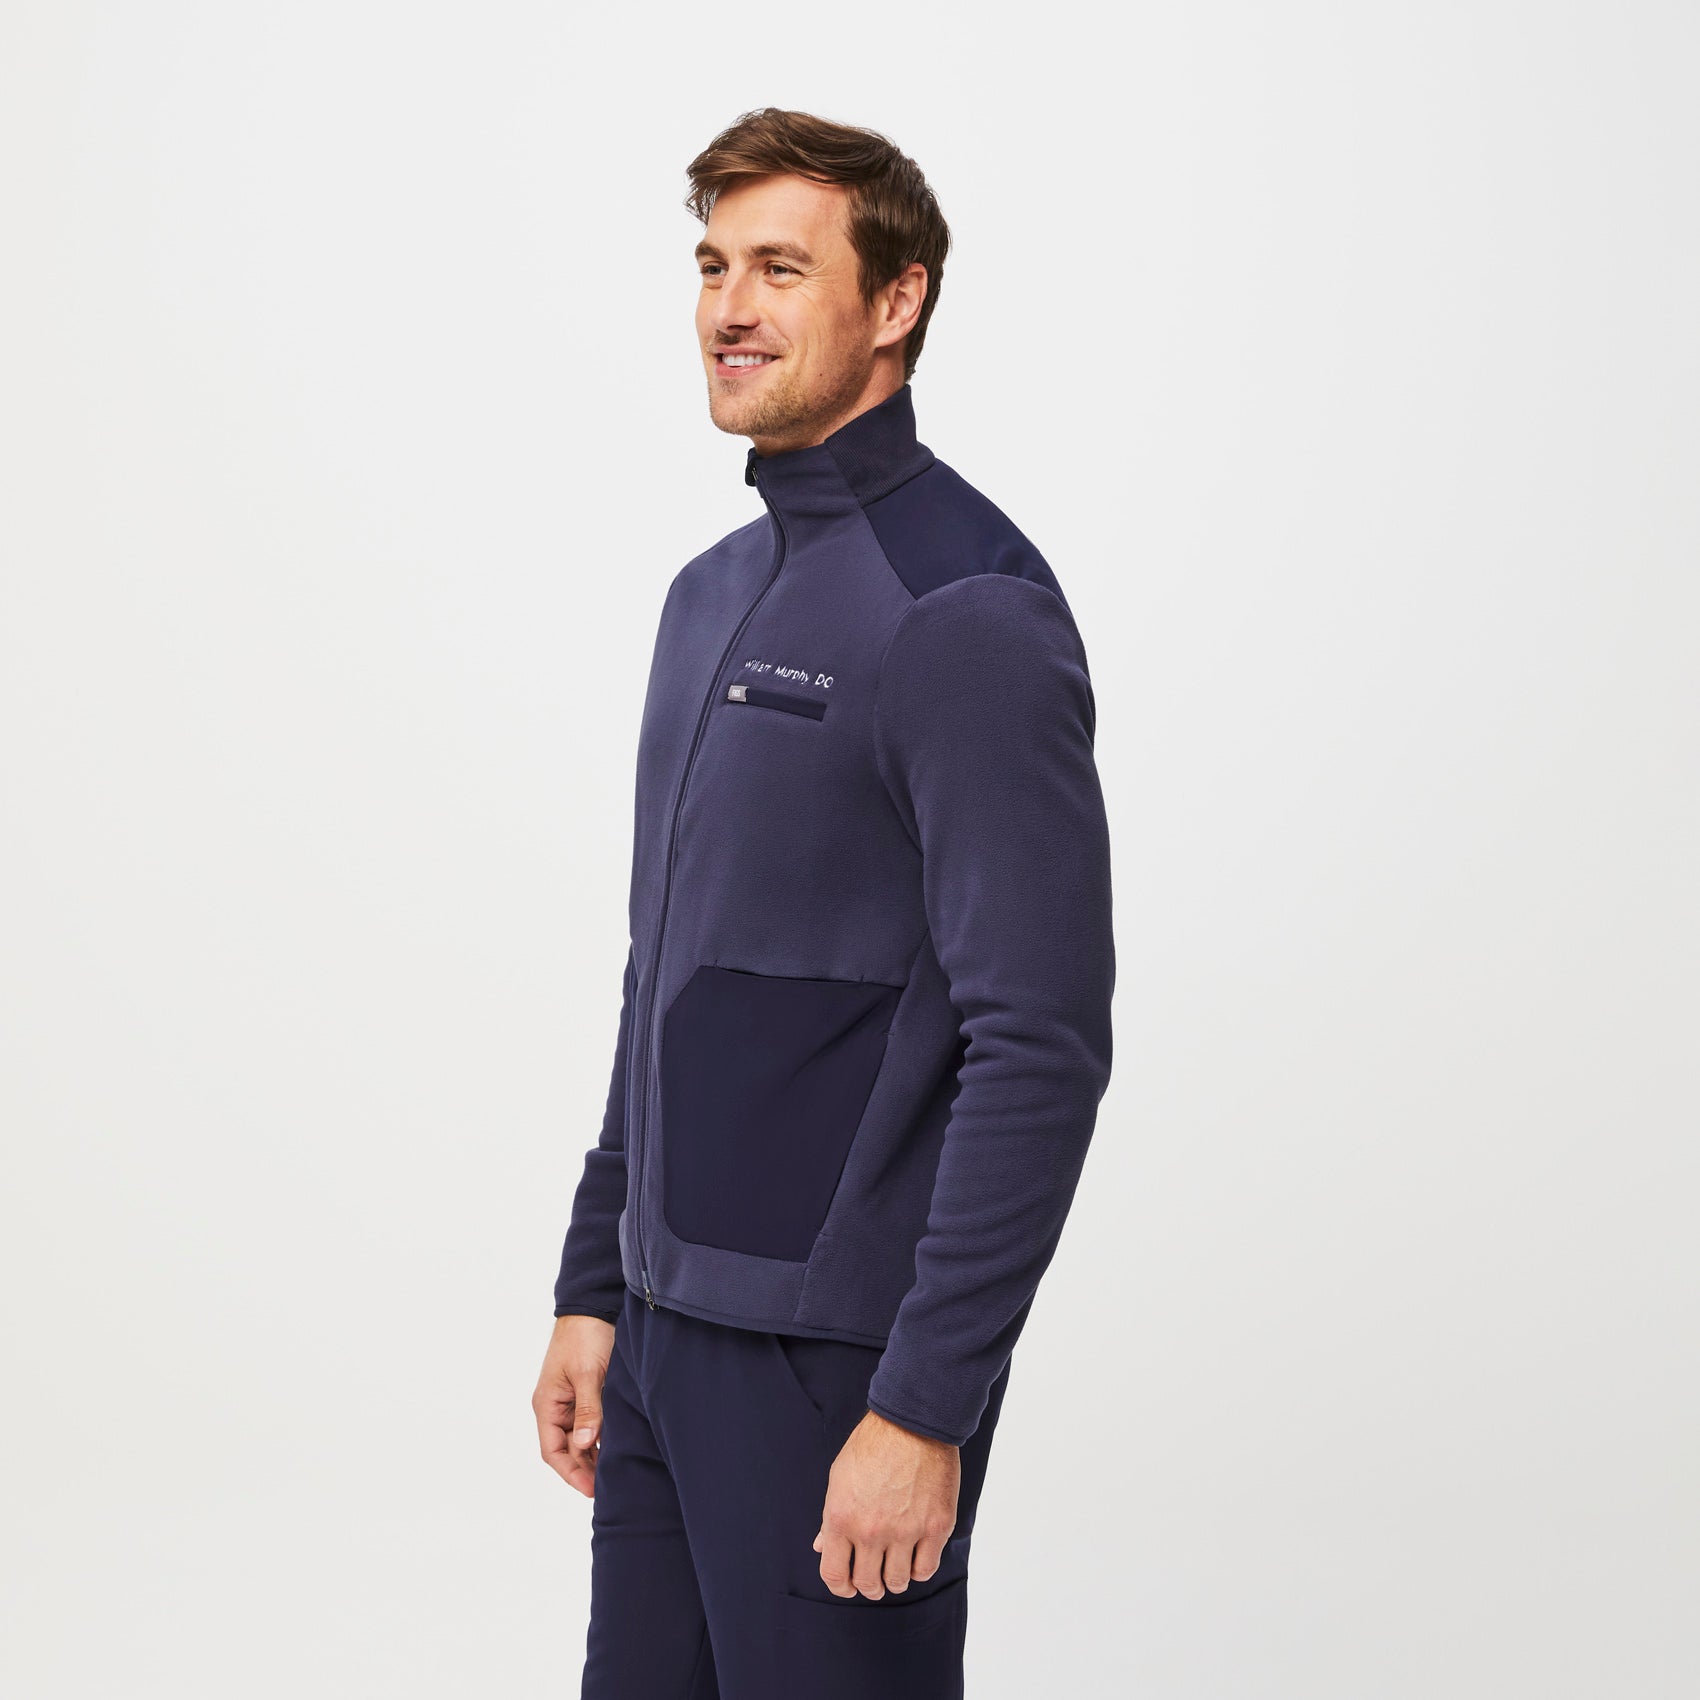 Men's On-Shift Fleece Jacket™ - Navy · FIGS